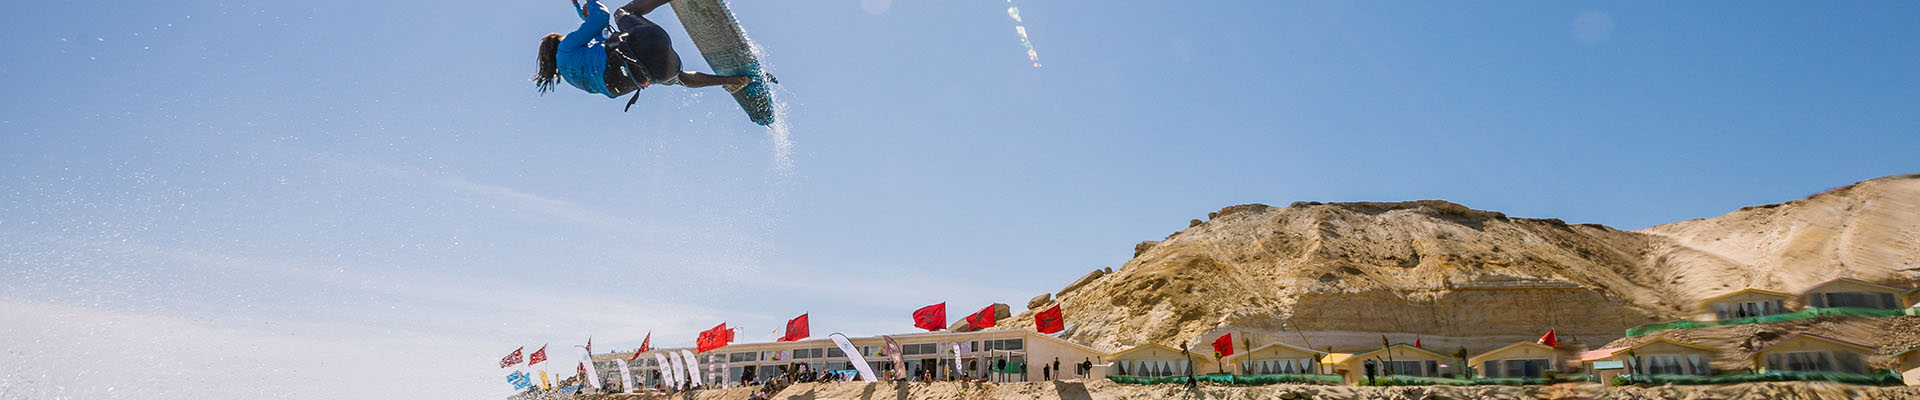 Image for GKA Kite-Surf World Cup Morocco 2019